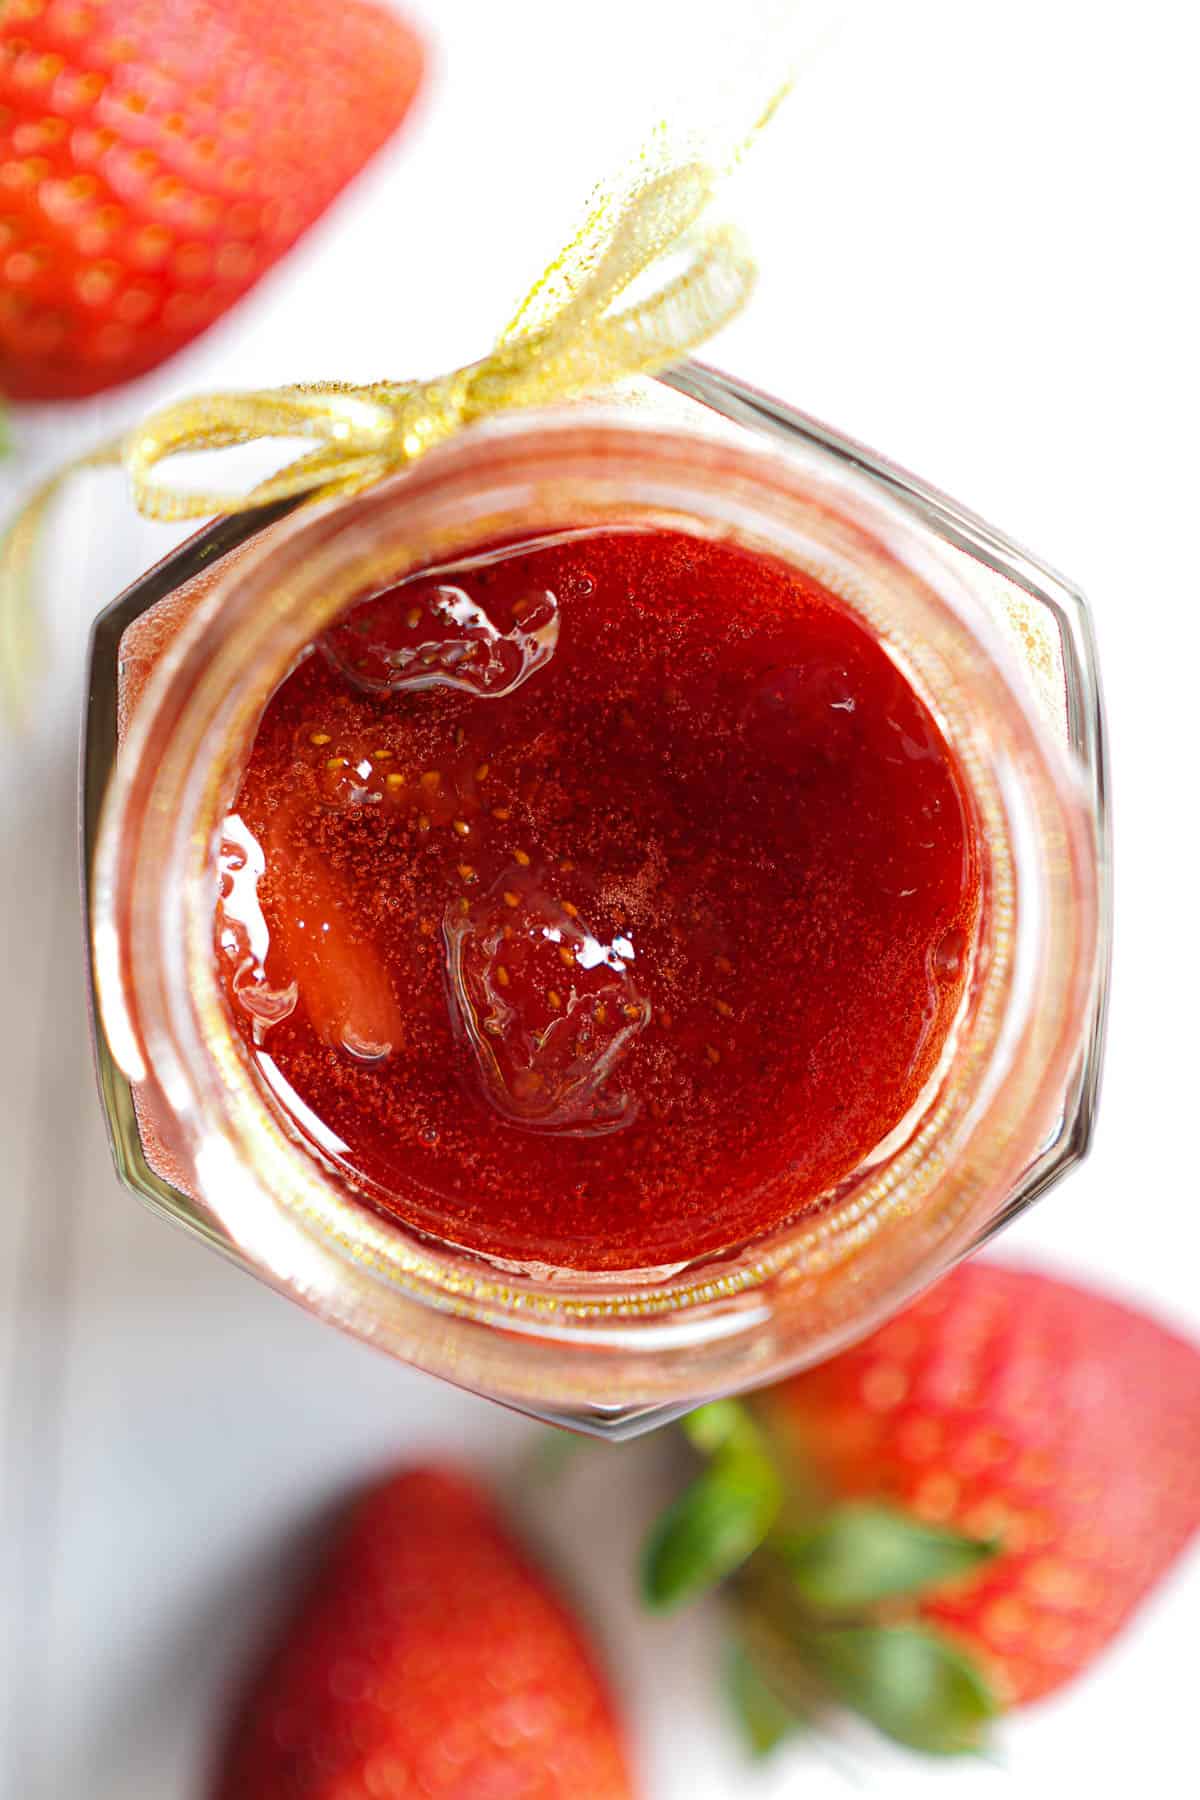 Top view of a jar of fruit jam.